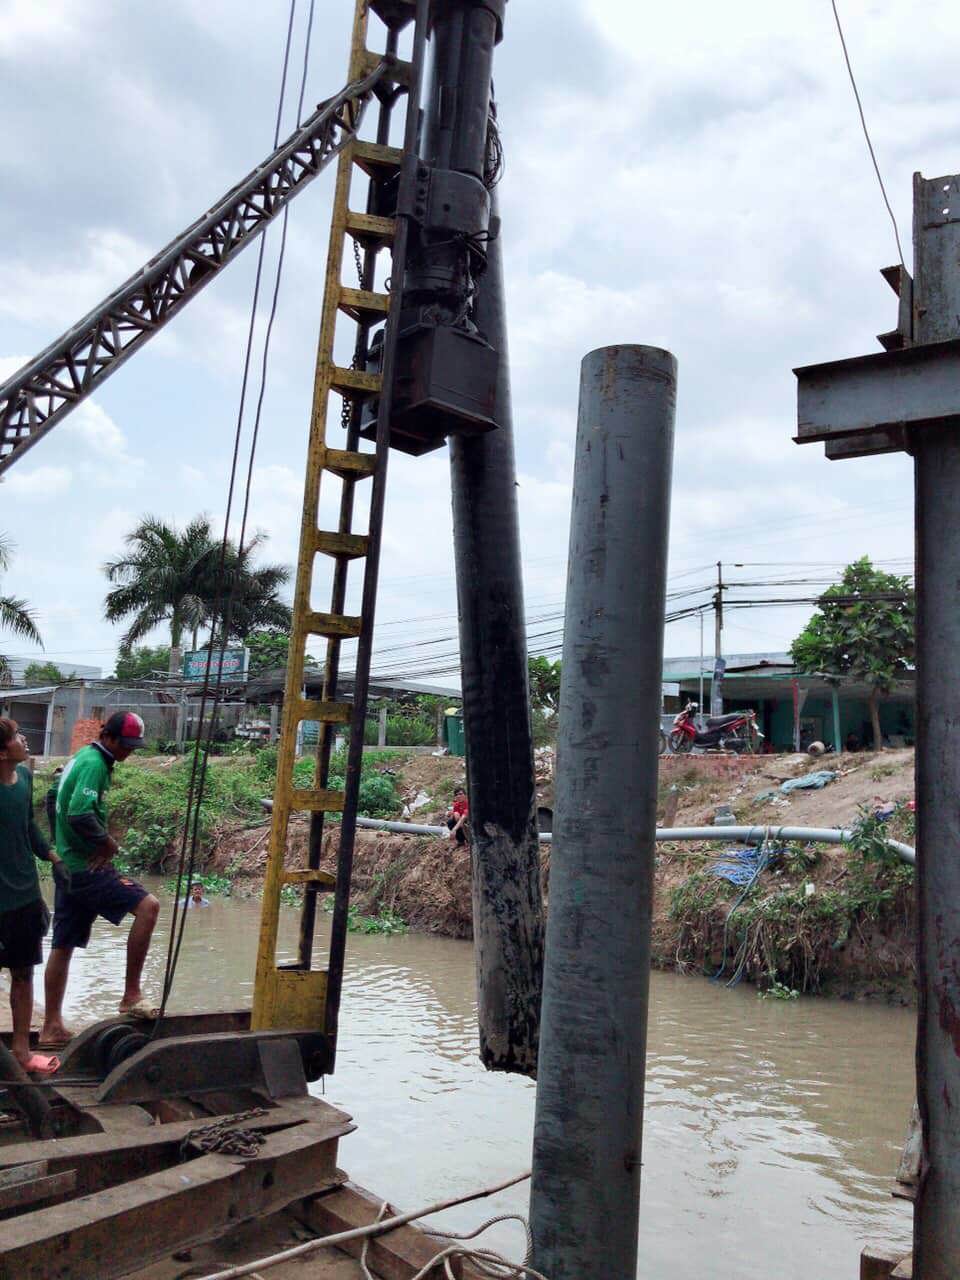 Tiền Giang: Chủ tịch UBND tỉnh phải “hạ lệnh” tháo dỡ chướng ngại vật gây ùn tắc giao thông đường thủy tại kênh Hai - Ảnh 1